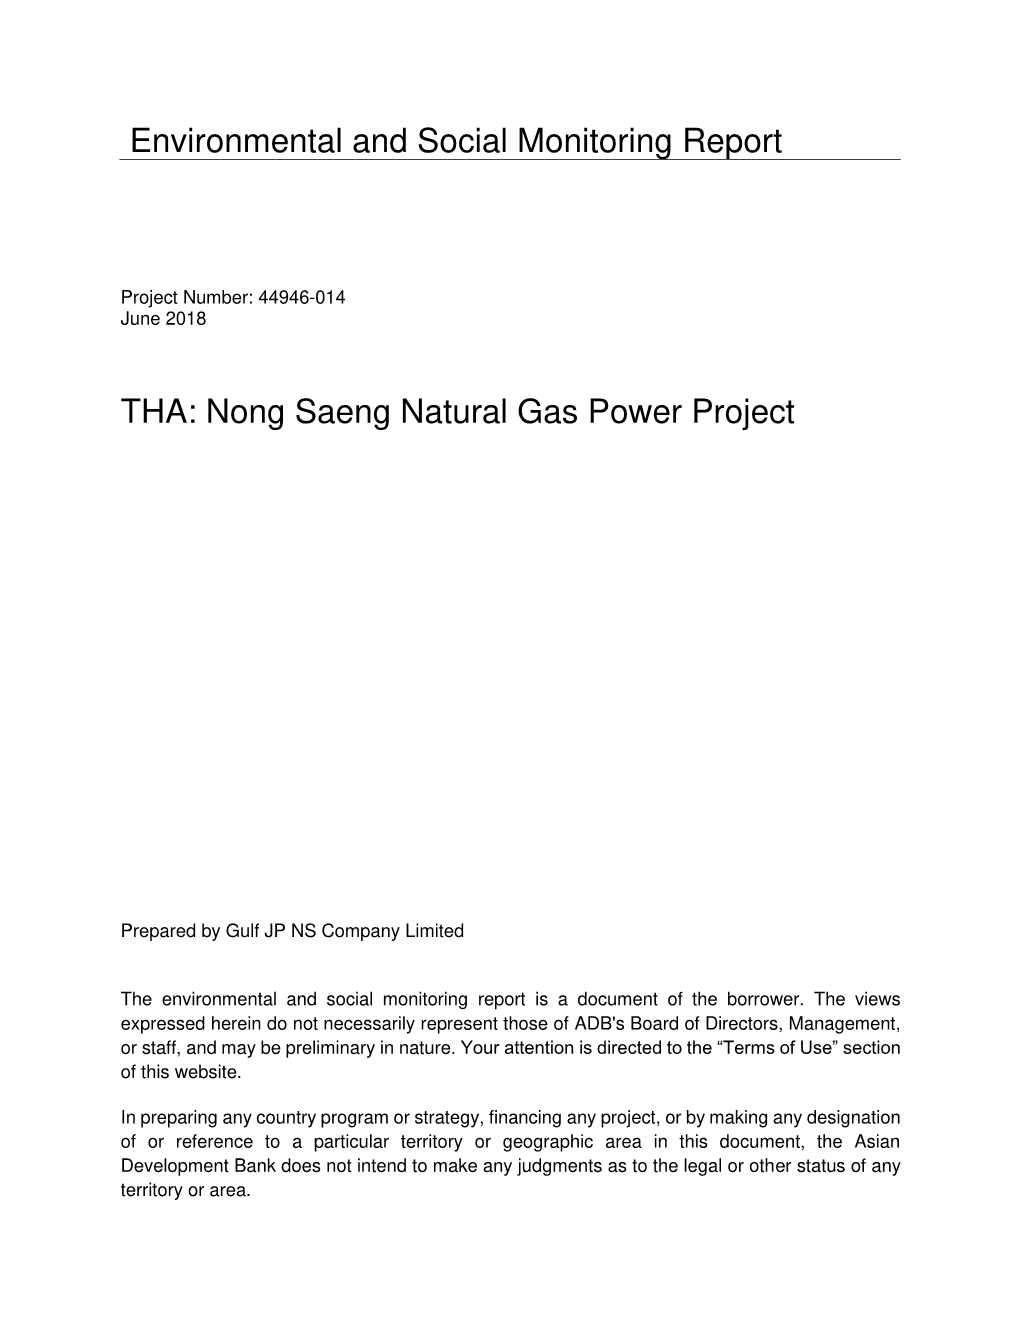 44946-014: Nong Saeng Natural Gas Power Project